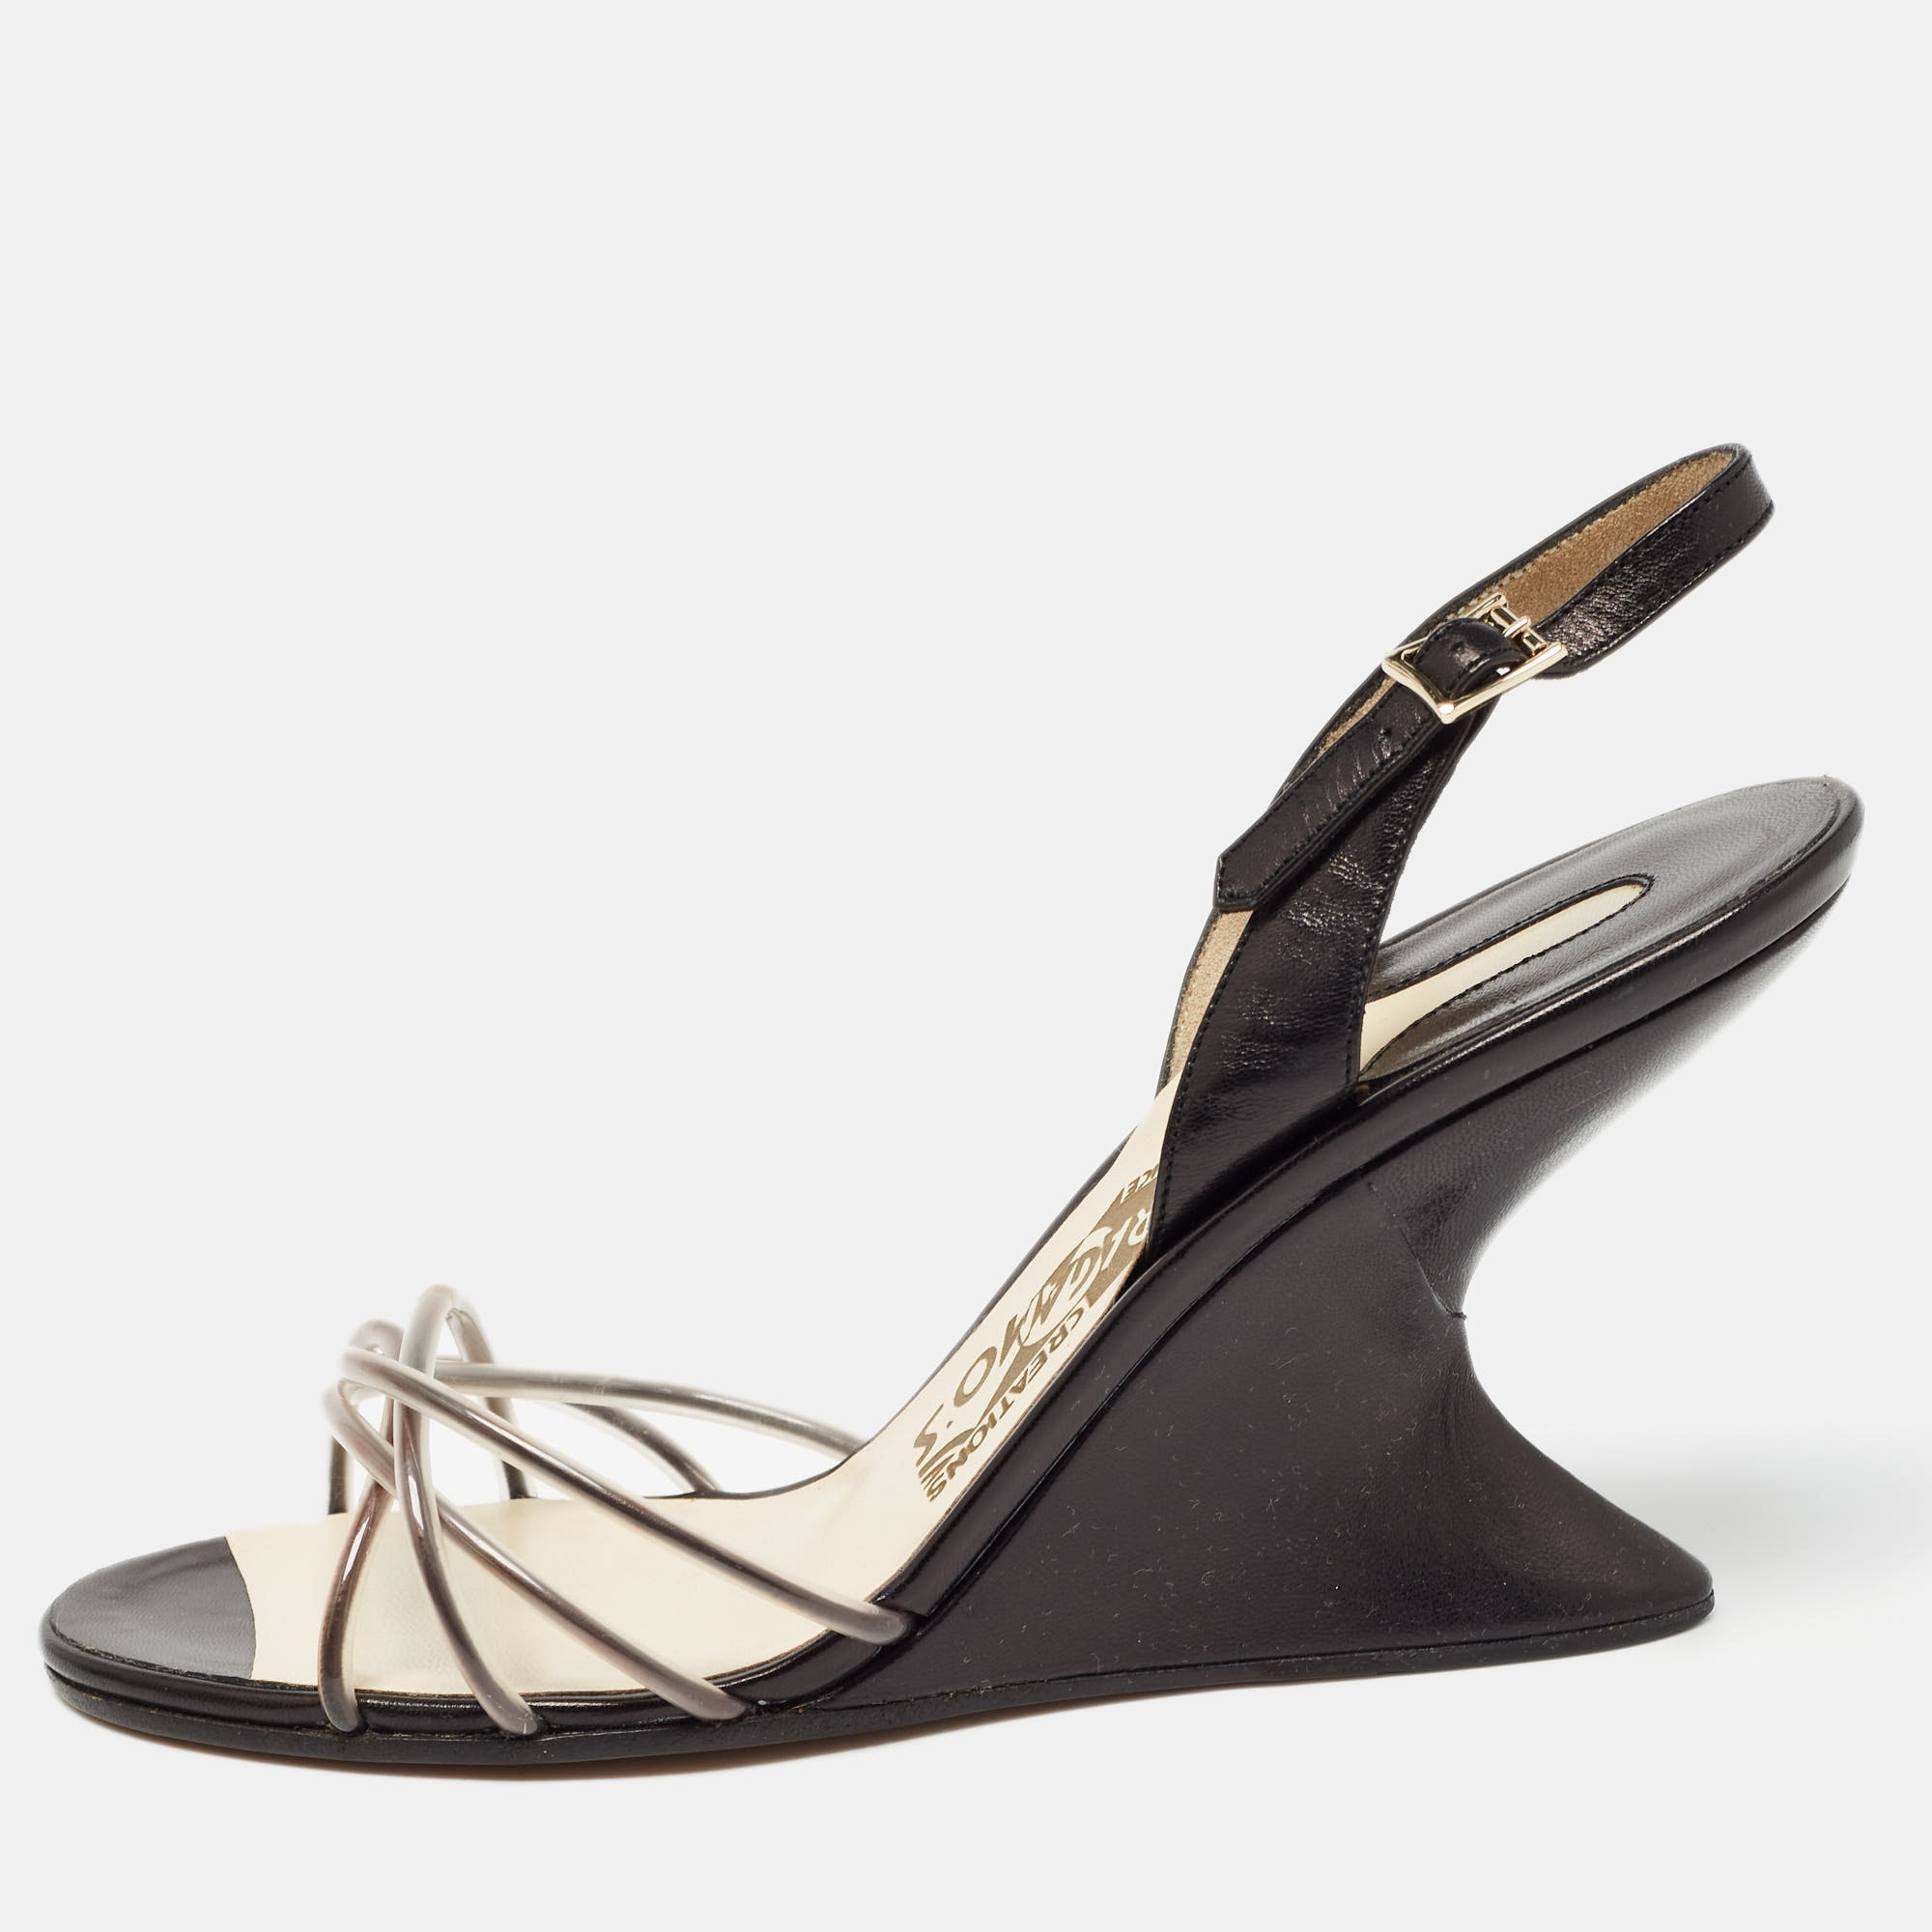 Salvatore ferragamo black/white pvc and leather arsina sandals size 36.5